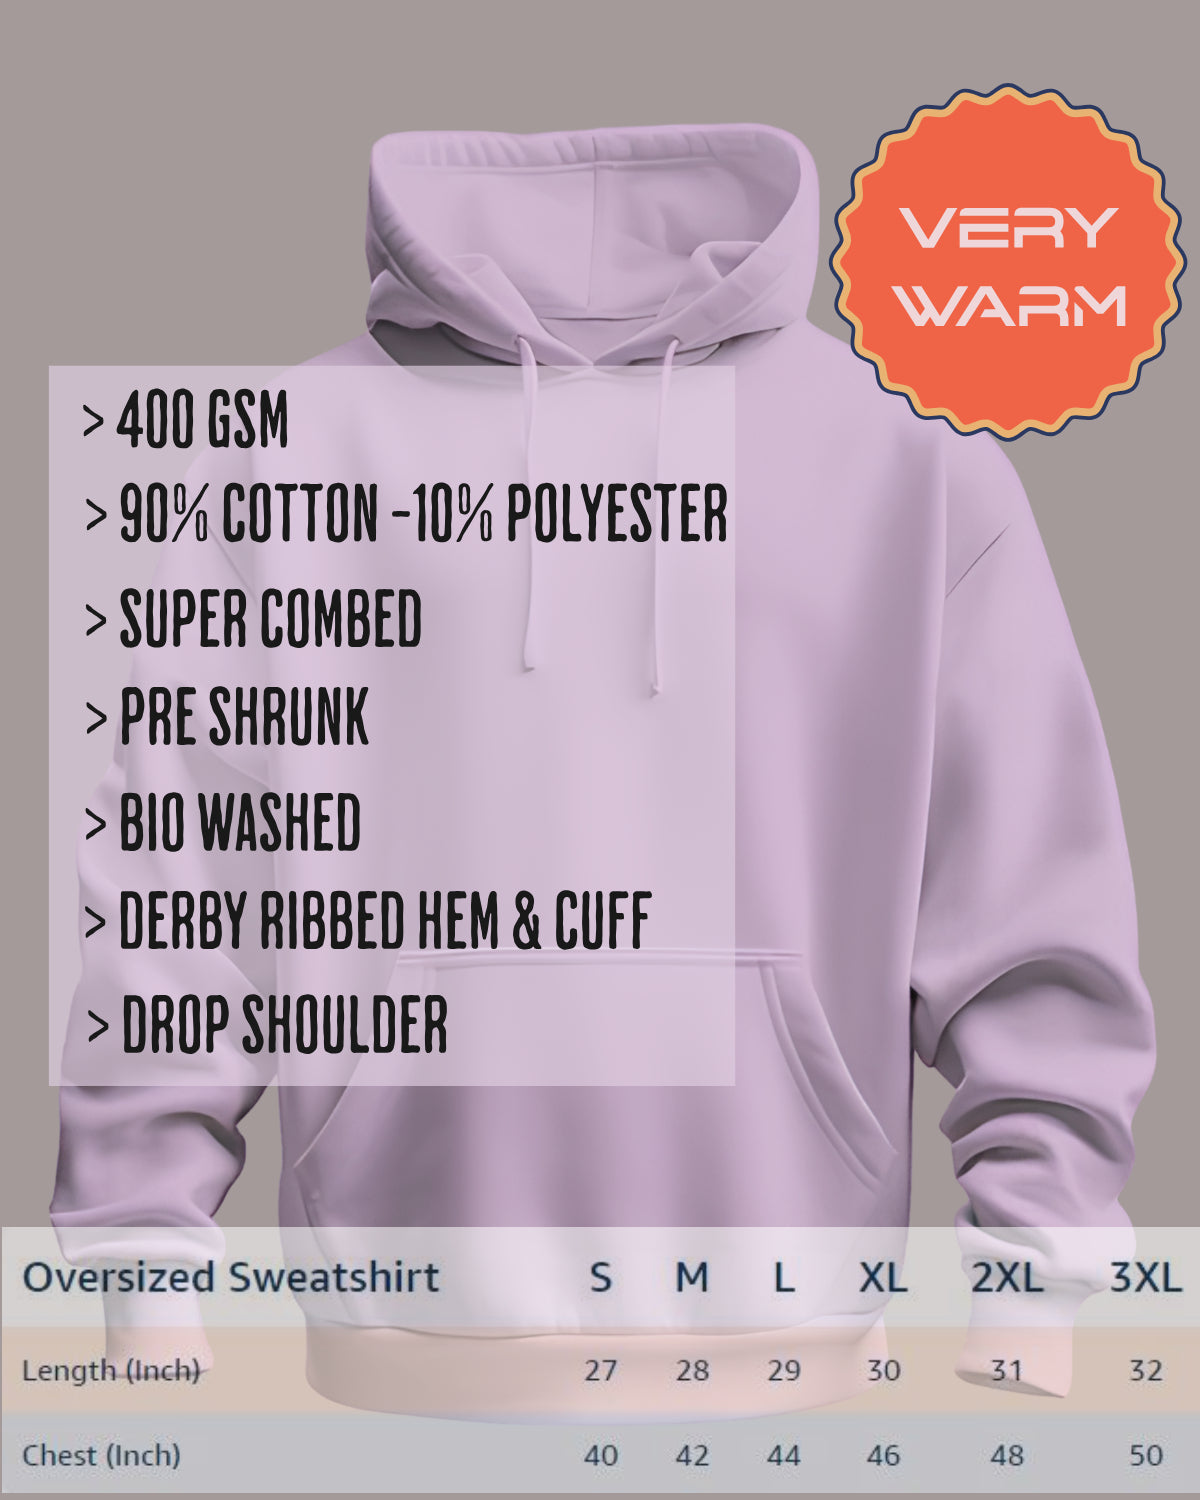 Winter wear : Unisex oversized Hooded Sweatshirt 400 GSM